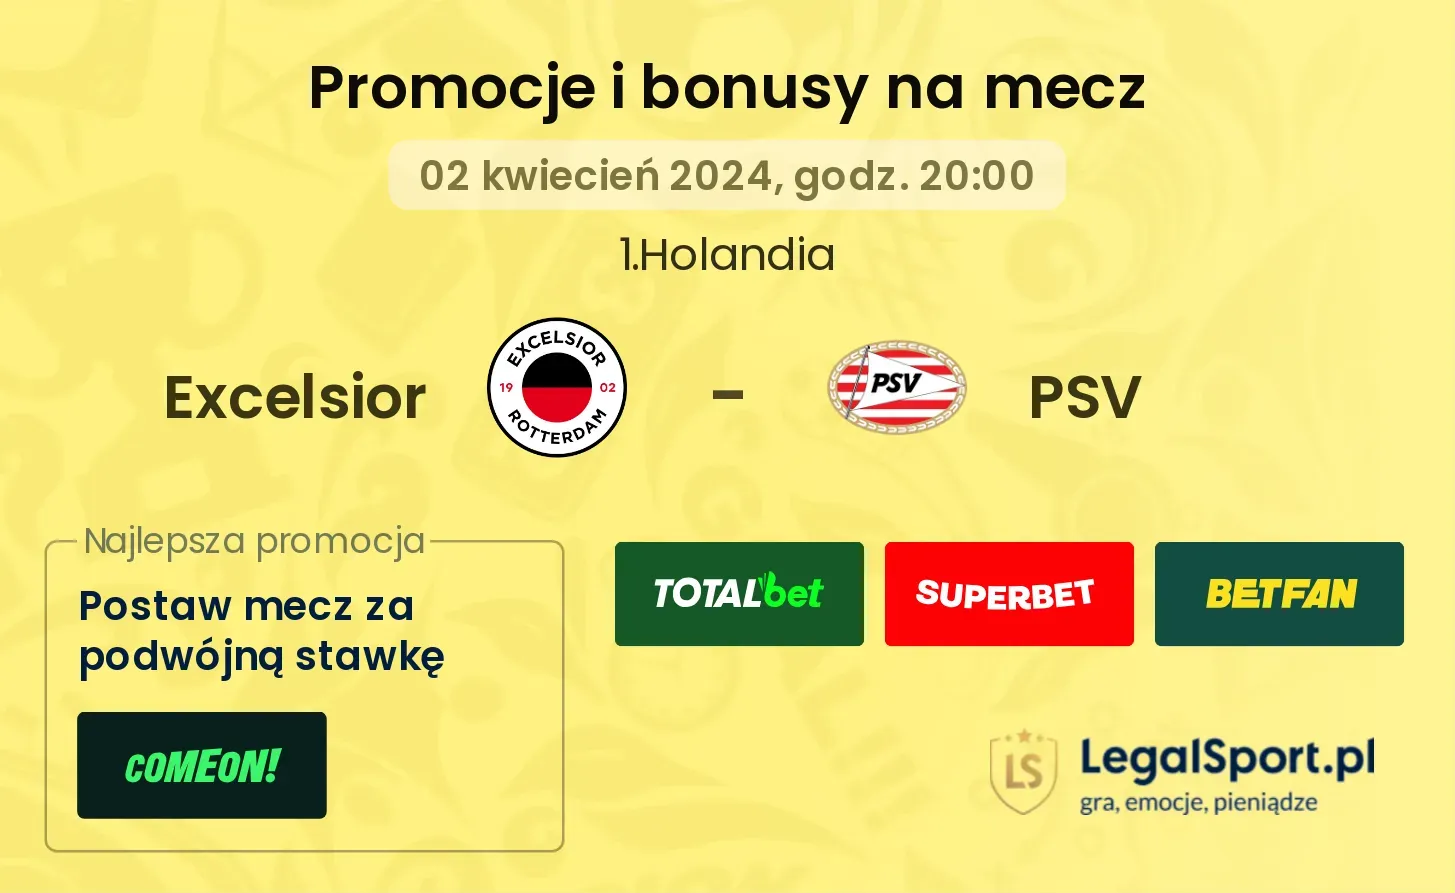 Excelsior - PSV $s